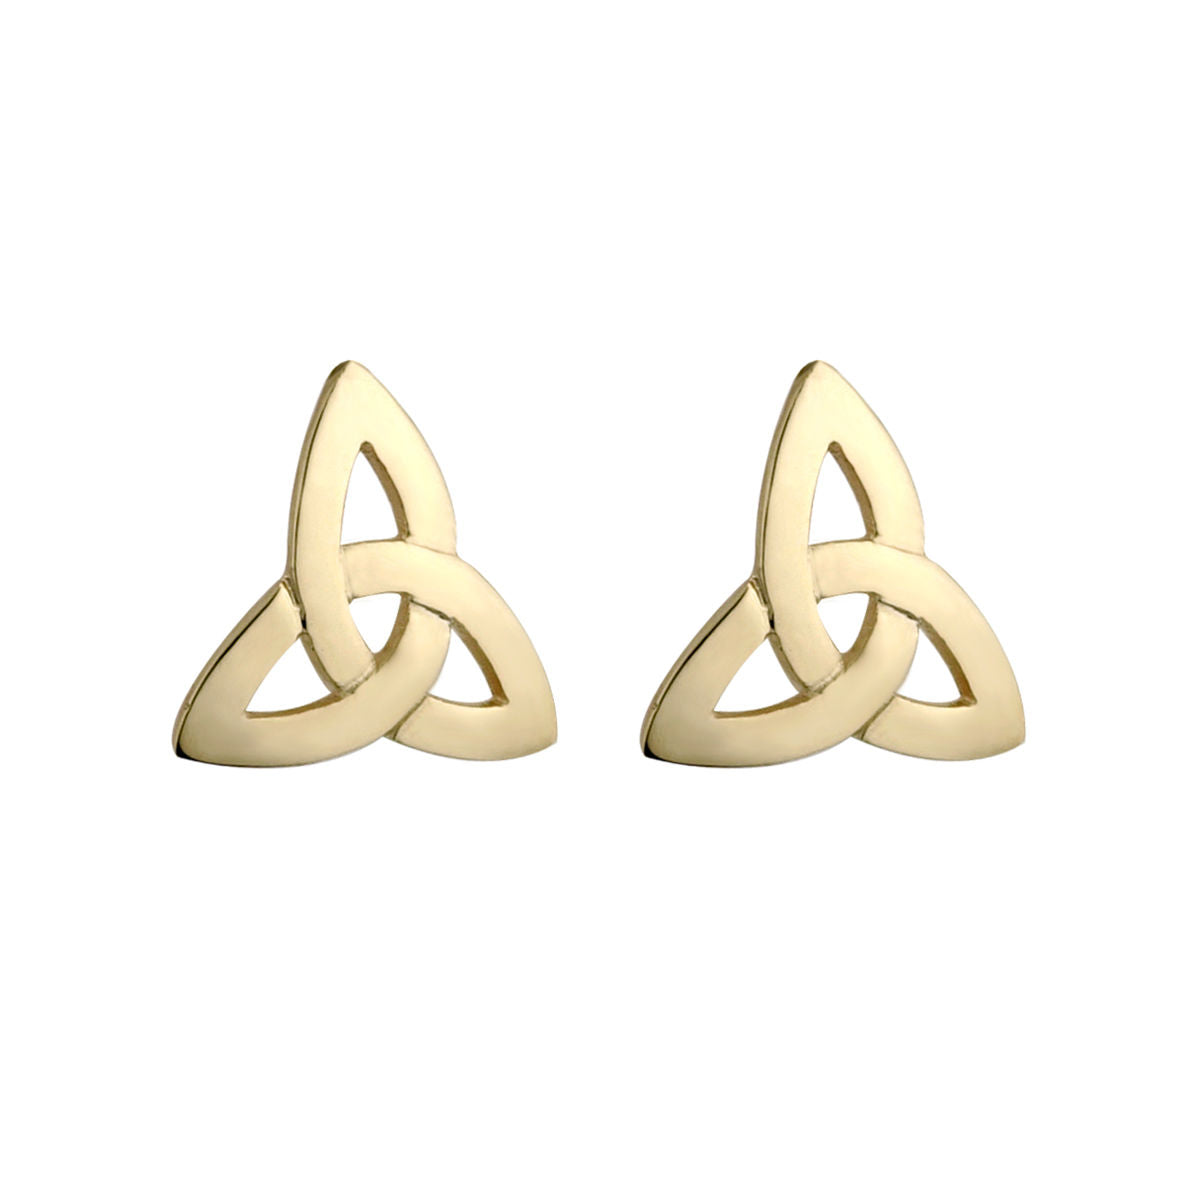 Solvar 10k Gold Celtic Trinity Knot Stud Earrings s3774